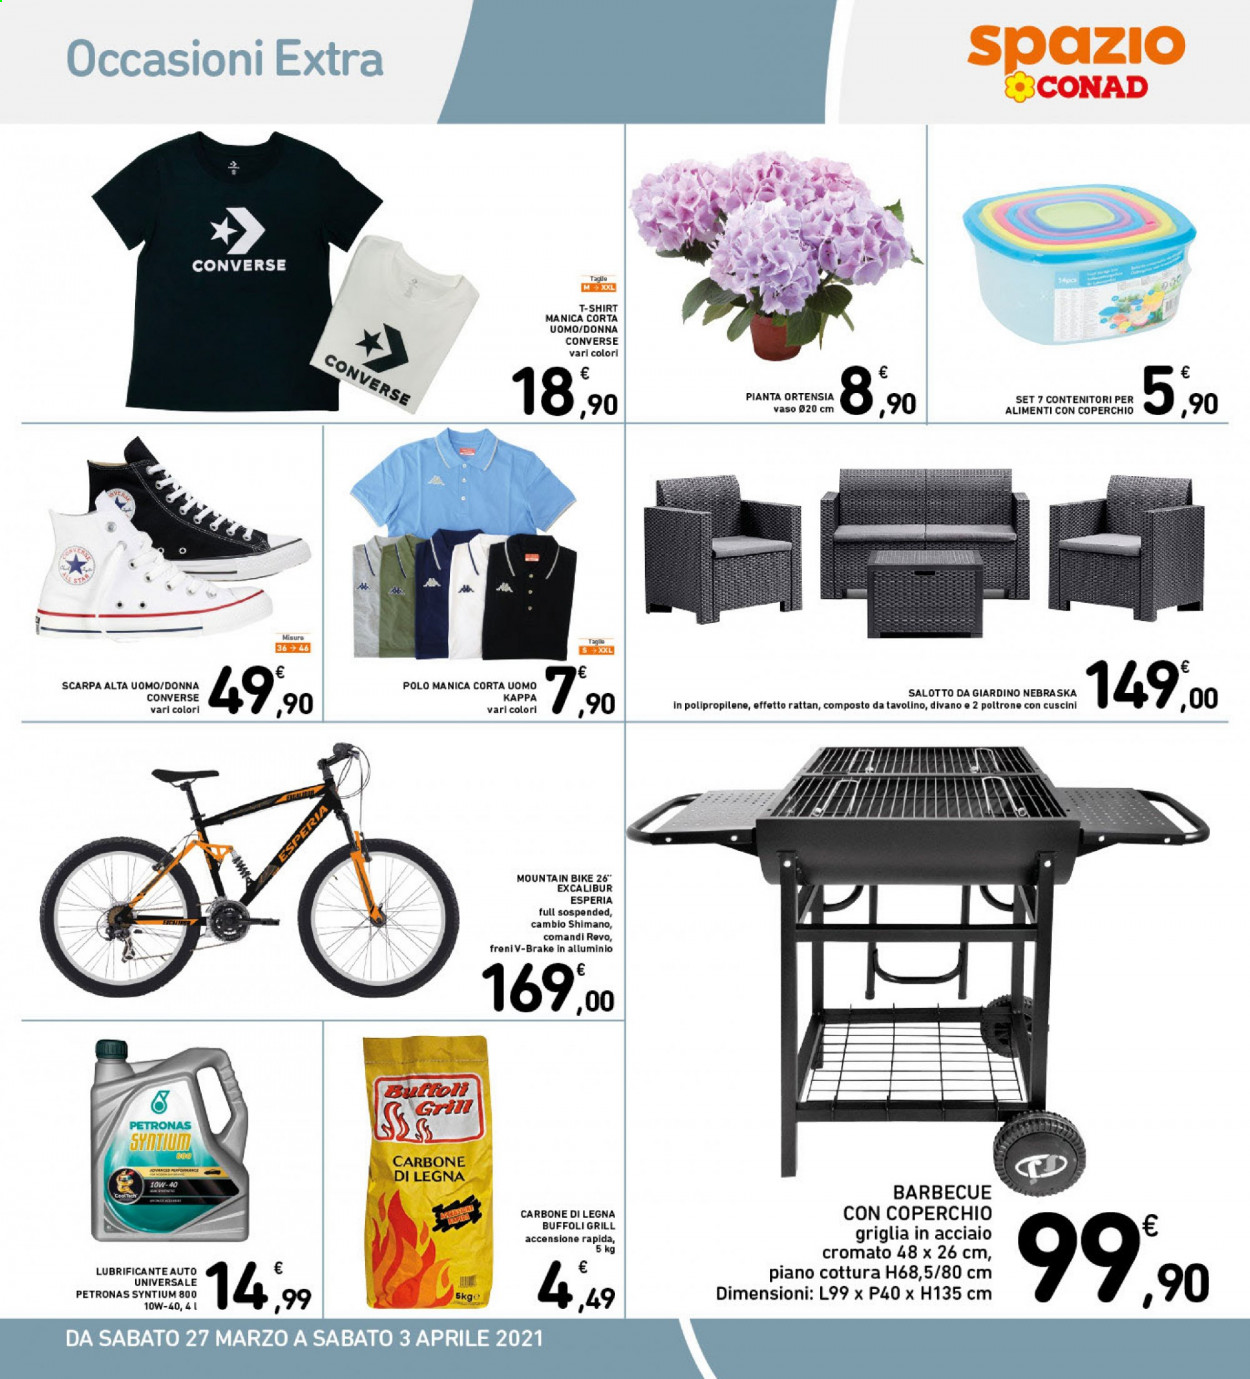 thumbnail - Volantino Conad - 27/3/2021 - 3/4/2021 - Prodotti in offerta - Converse, Shimano, Star, lubrificante, divano, poltrona, t-shirt, mountain bike, carbonella, barbecue. Pagina 15.